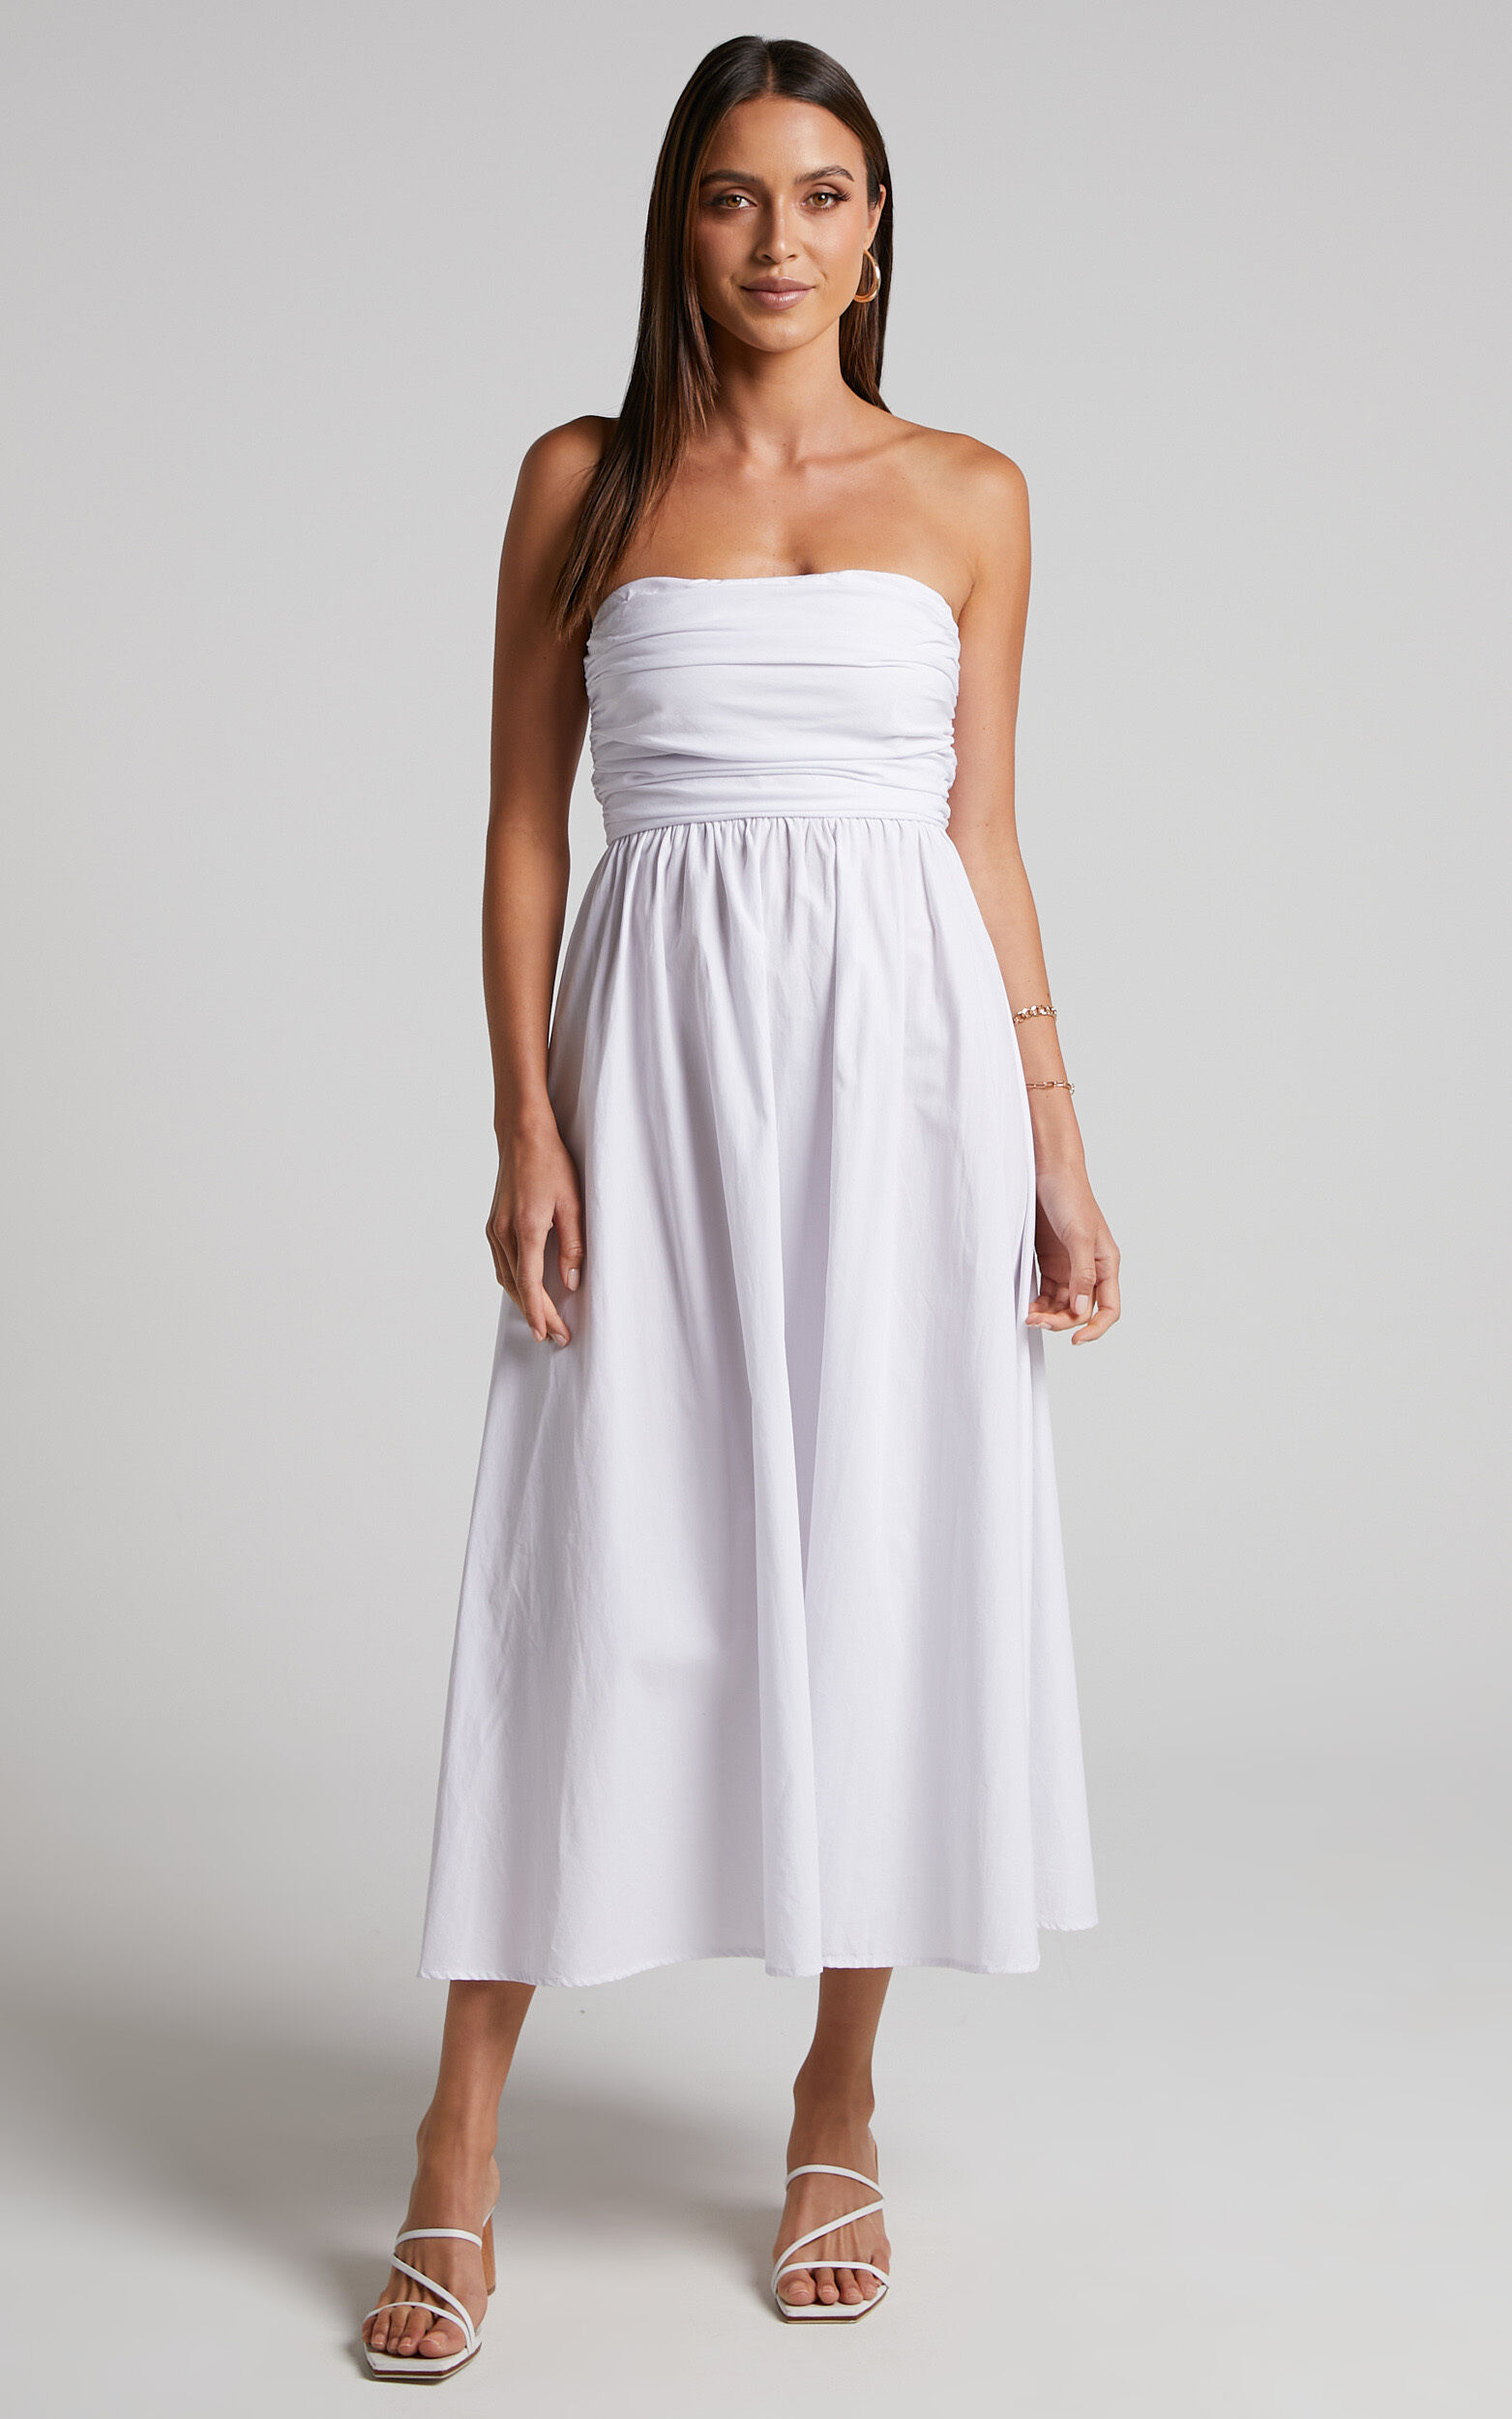 Sula Midi Dress - Ruched Bust Strapless Dress in White | Showpo USA